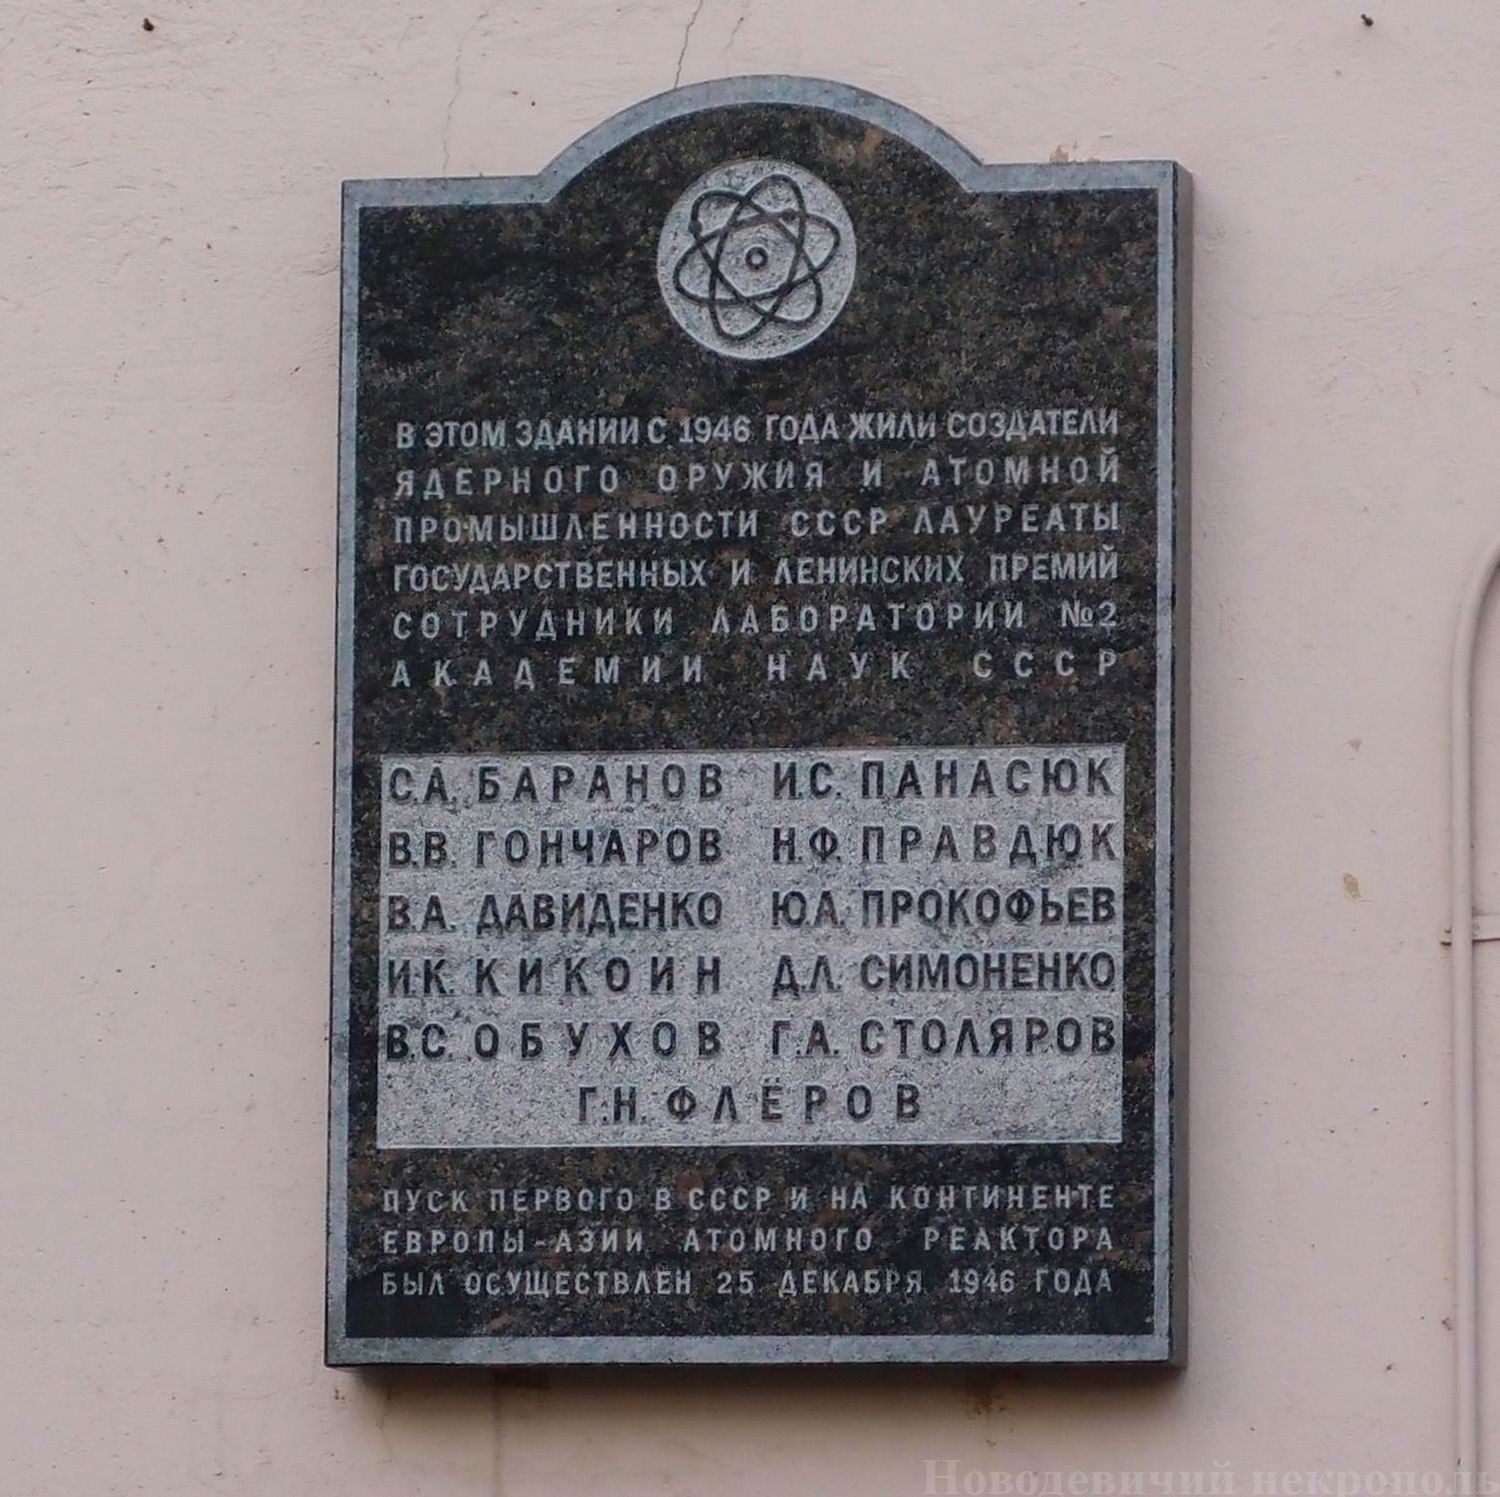 Мемориальная доска сотрудникам Лаборатории № 2 АН СССР, на Песчаной улице, дом 10, открыта в августе 2007.